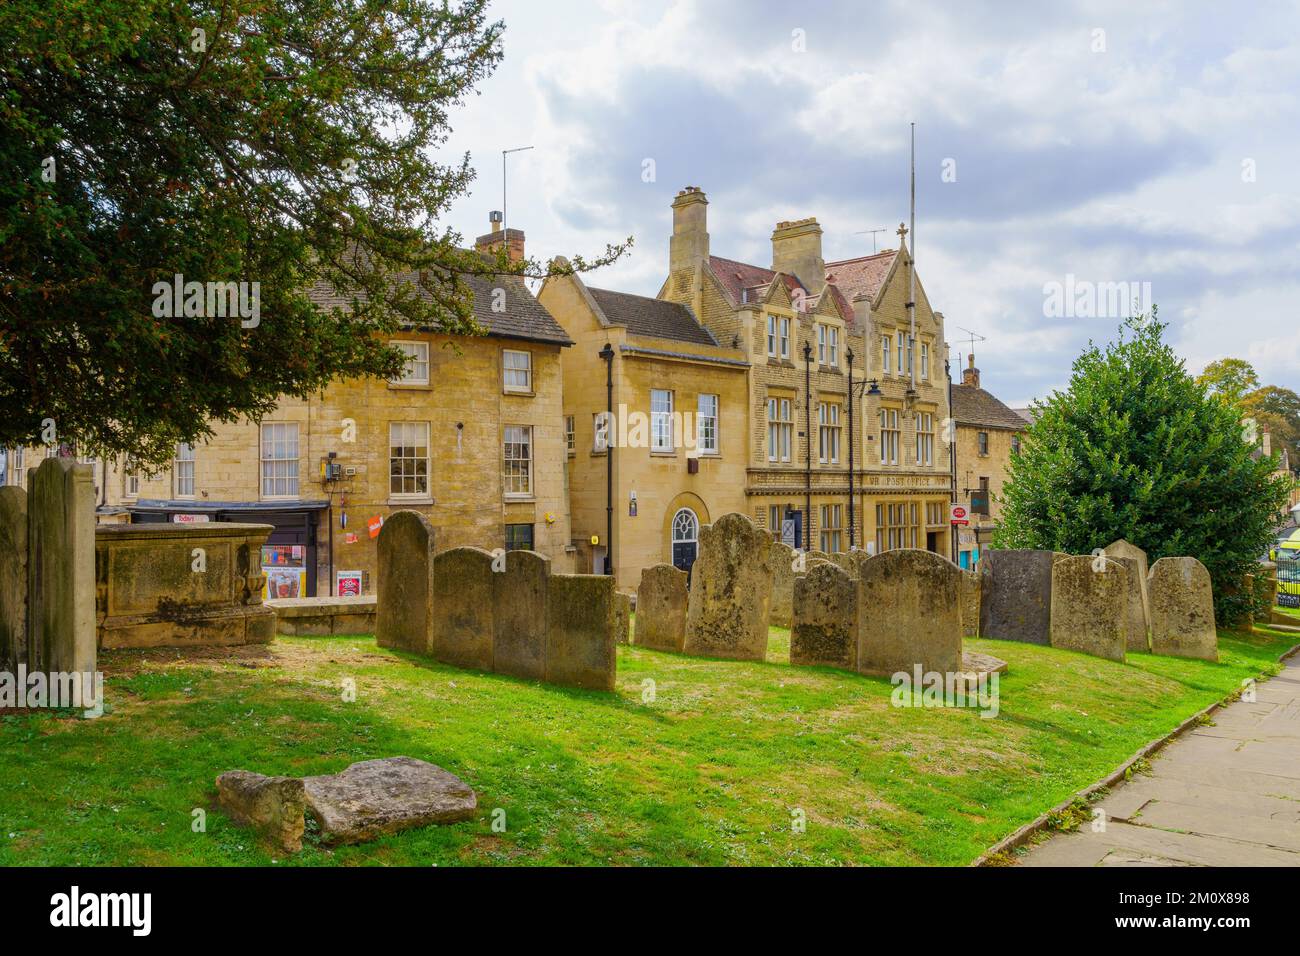 Stamford, Royaume-Uni - 22 septembre 2022: Vue d'un cimetière de cour d'église, à Stamford, Lincolnshire, Angleterre, Royaume-Uni Banque D'Images